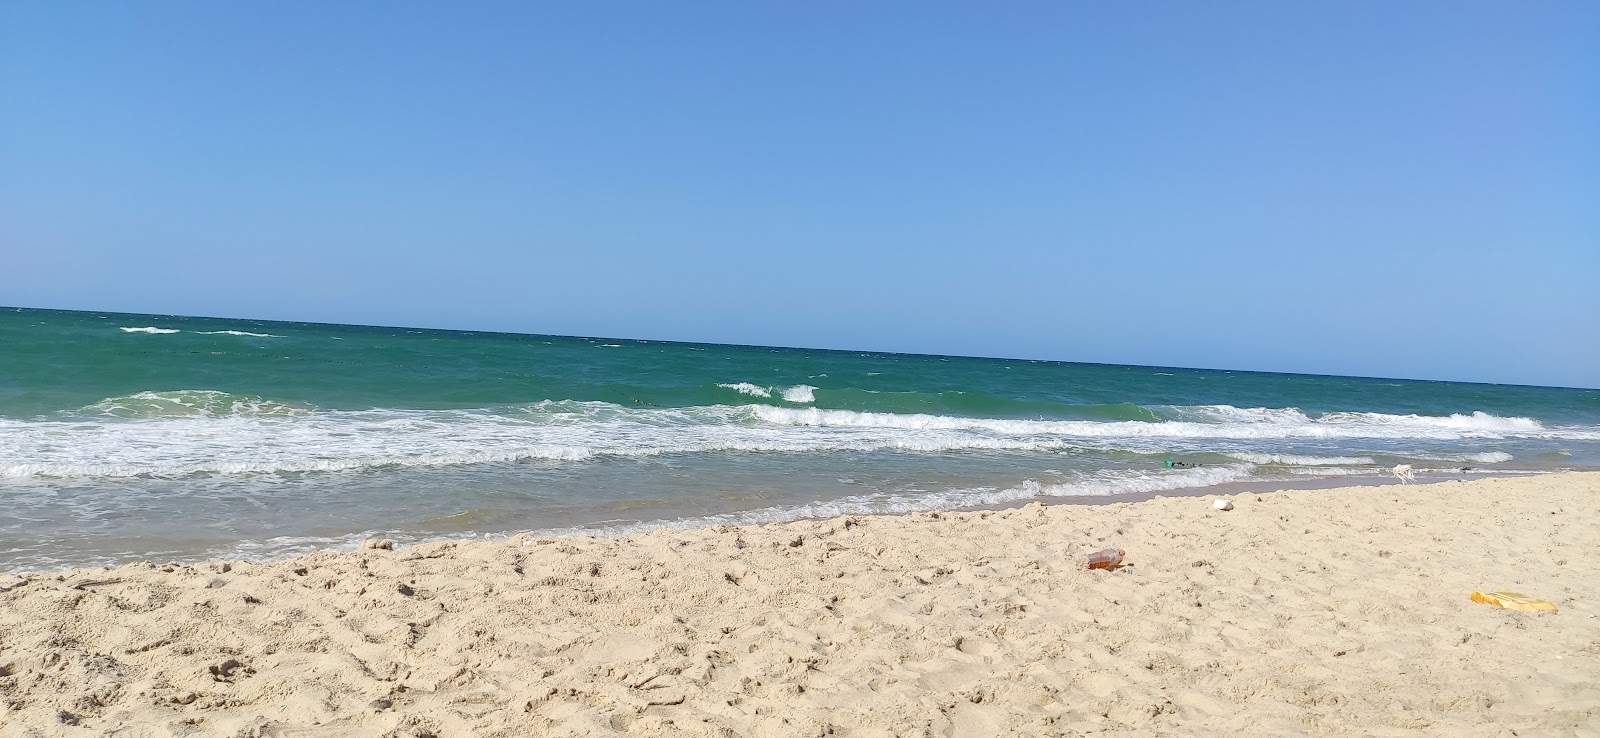 Foto de Sama El Arish Beach com areia brilhante superfície